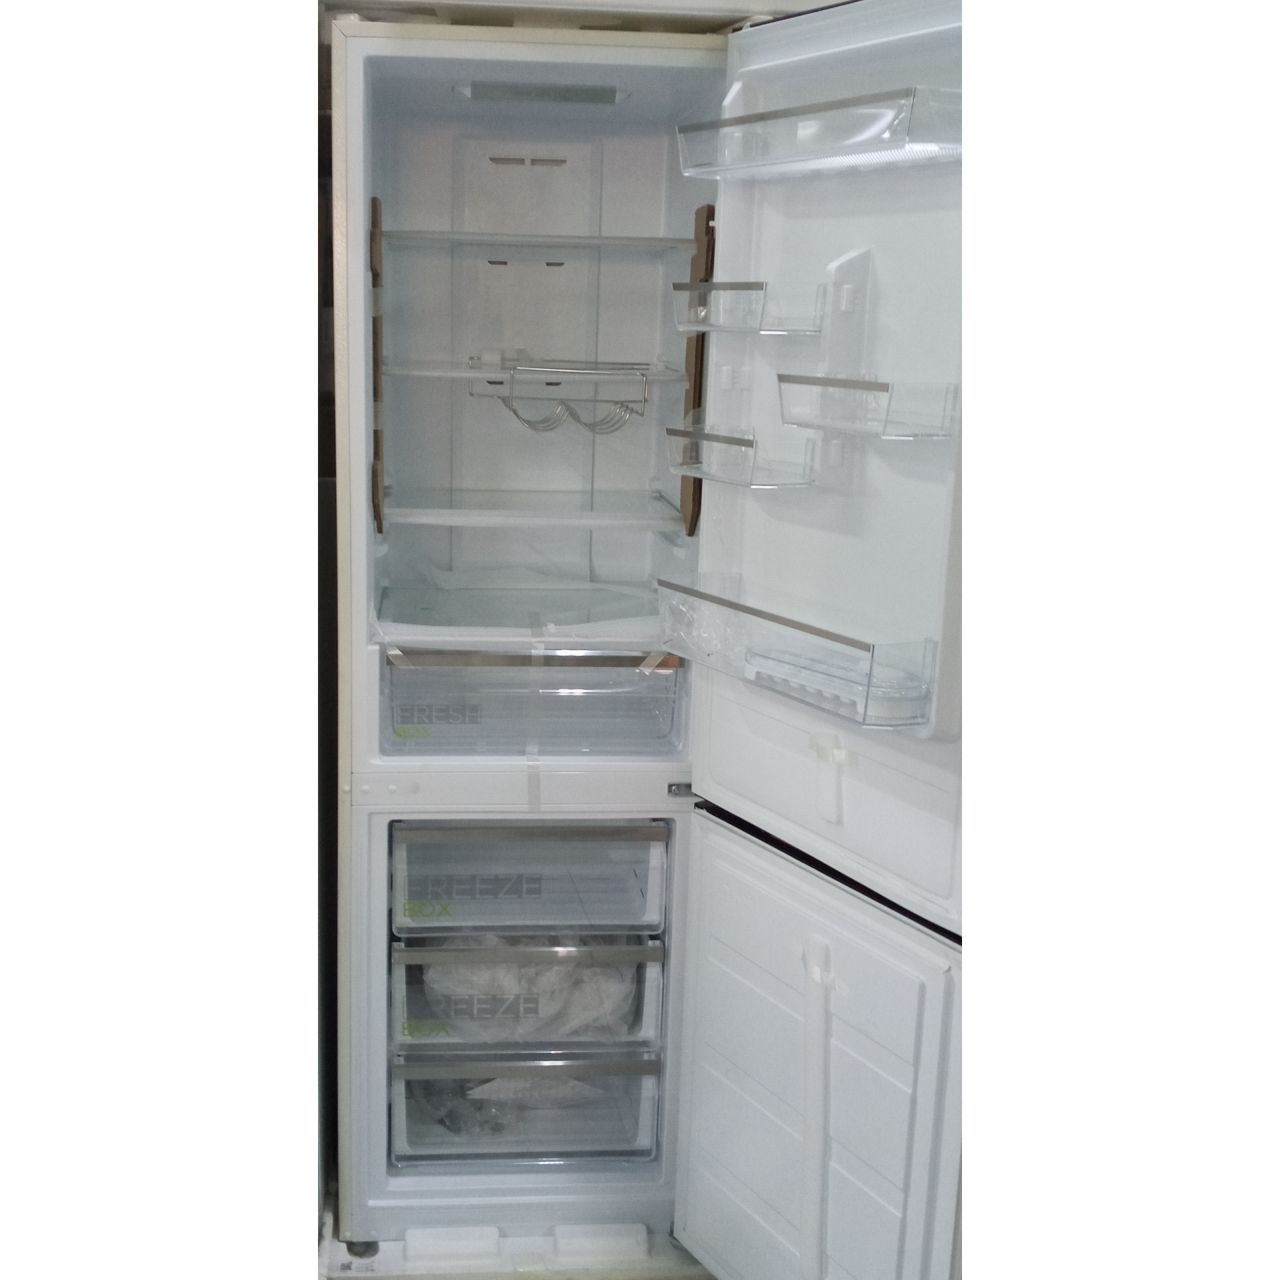 Холодильник двухкамерный Midea 322 литра